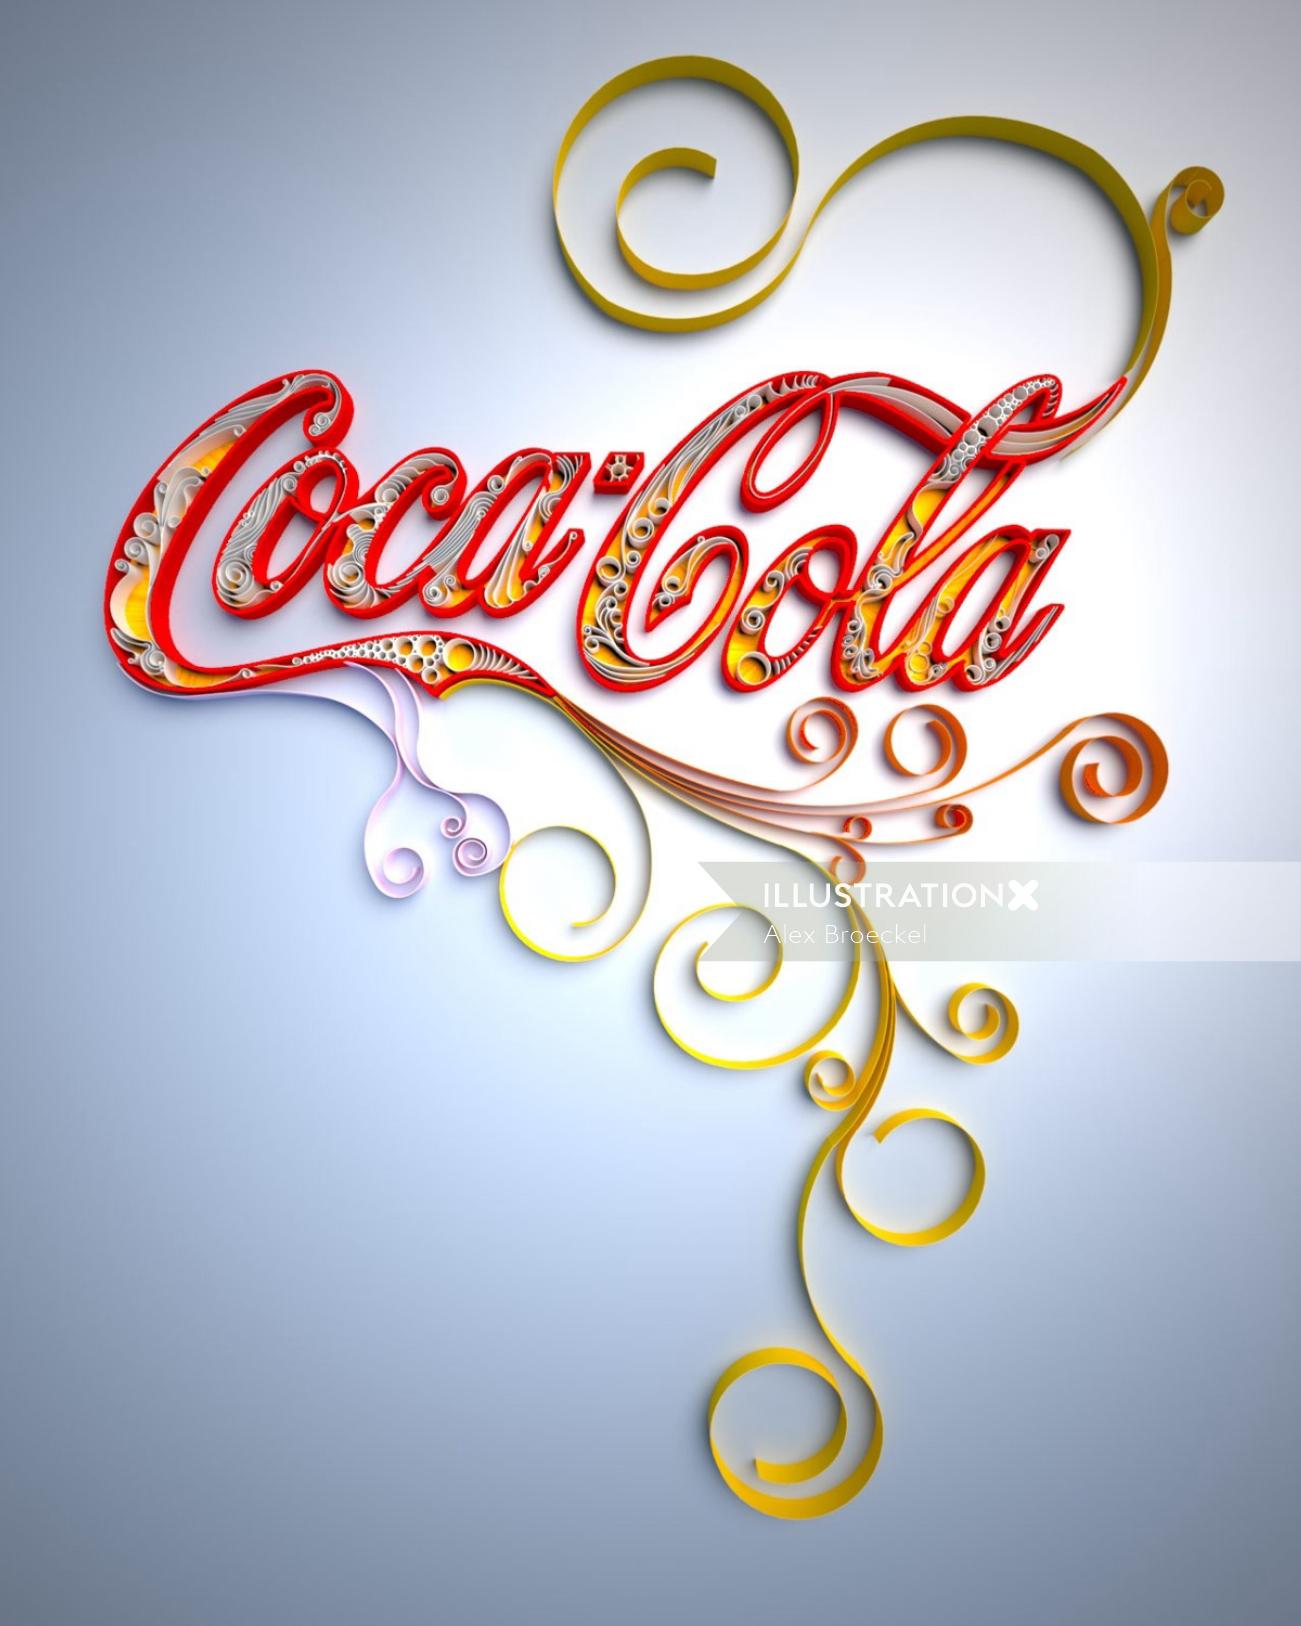 Conception de lettrage Coca-Cola